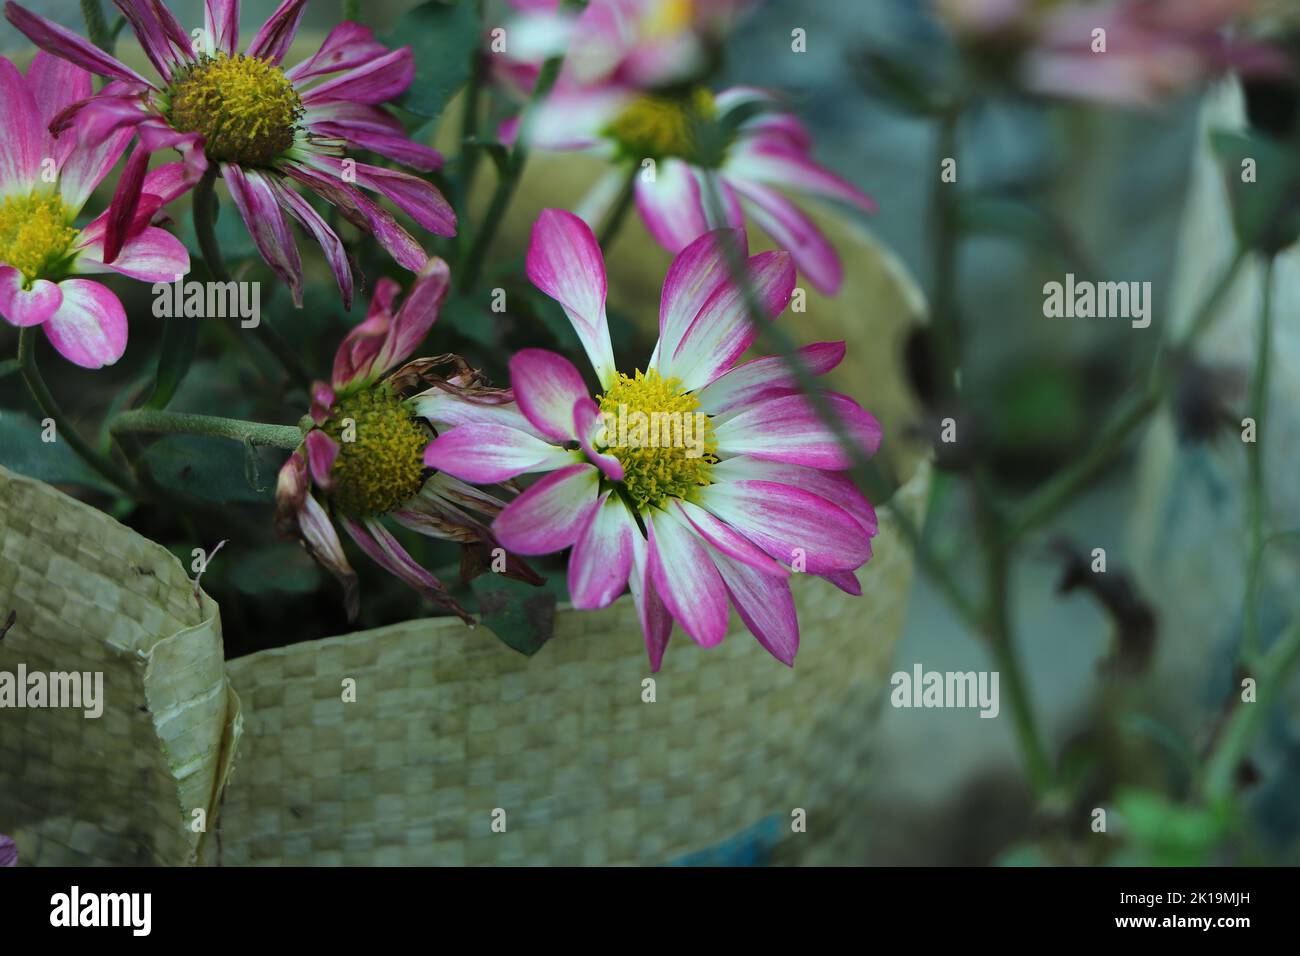 Chrysanthème rose violet blanc. Сhrysanthemum fleurs avec des centres jaunes et des bouts blancs sur leurs pétales. Bush de plantes de jardin d'automne, fleurs en croissance Banque D'Images